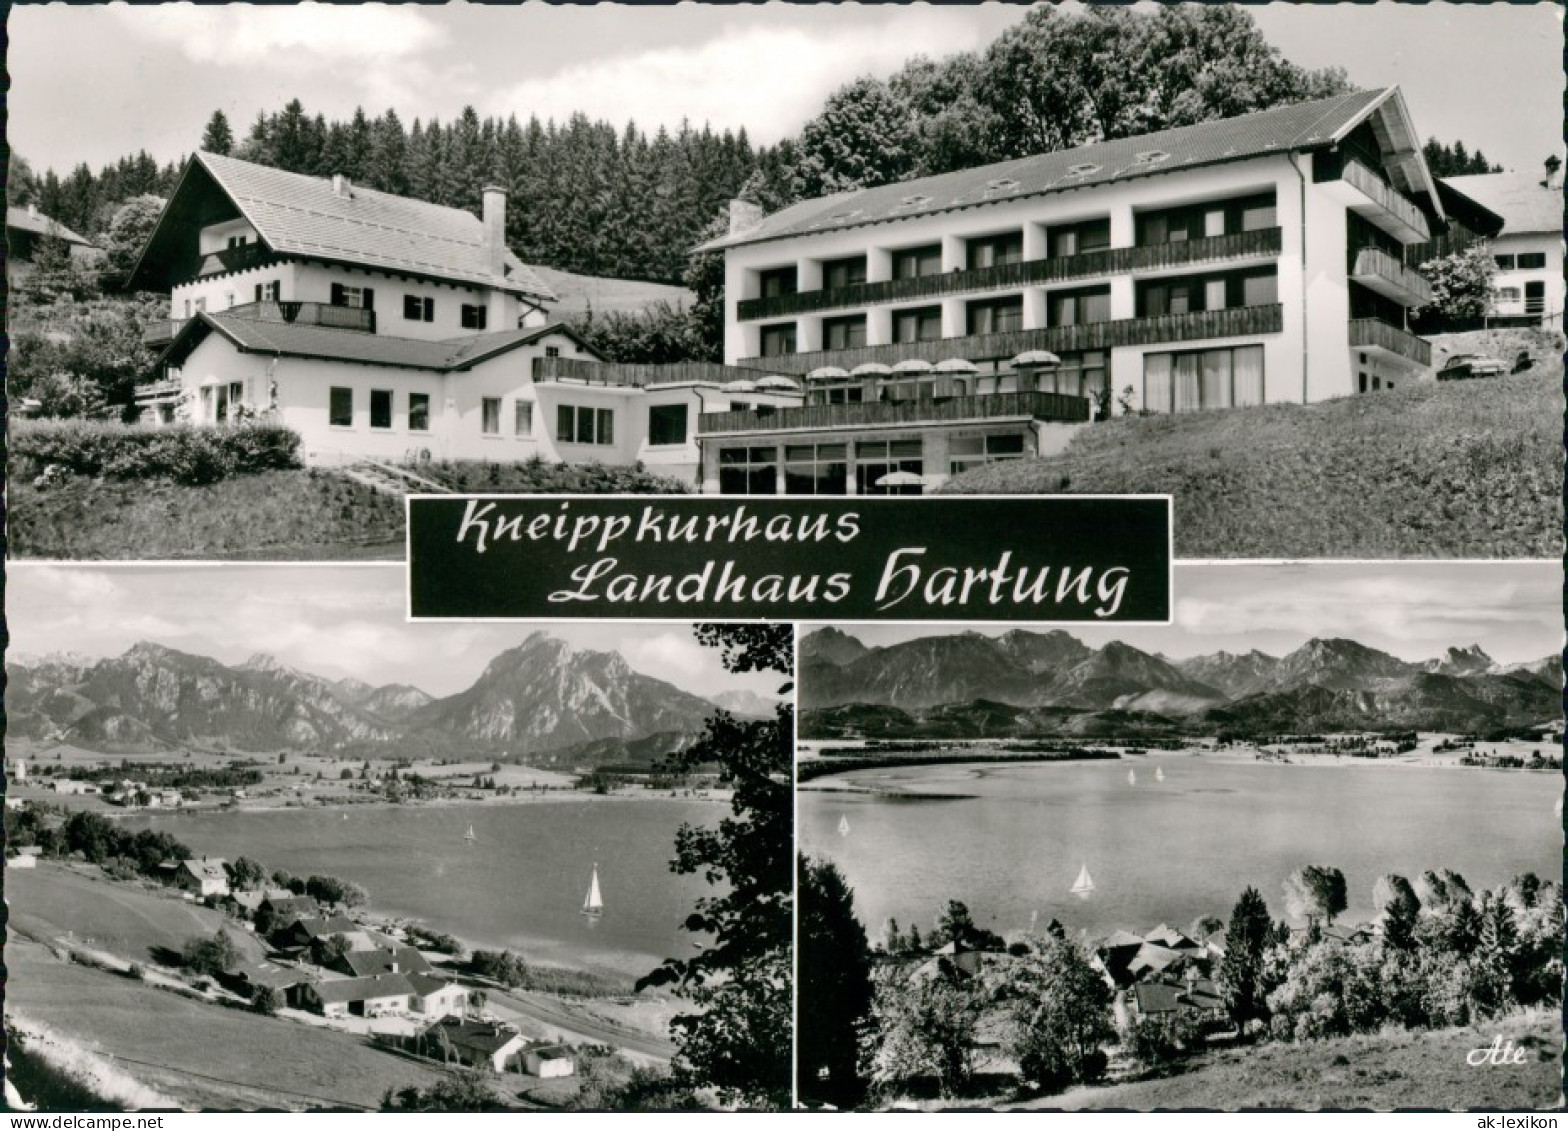 Ansichtskarte Hopfen Am See-Füssen Kneippkurhaus Landhaus Hartung 1963 - Füssen